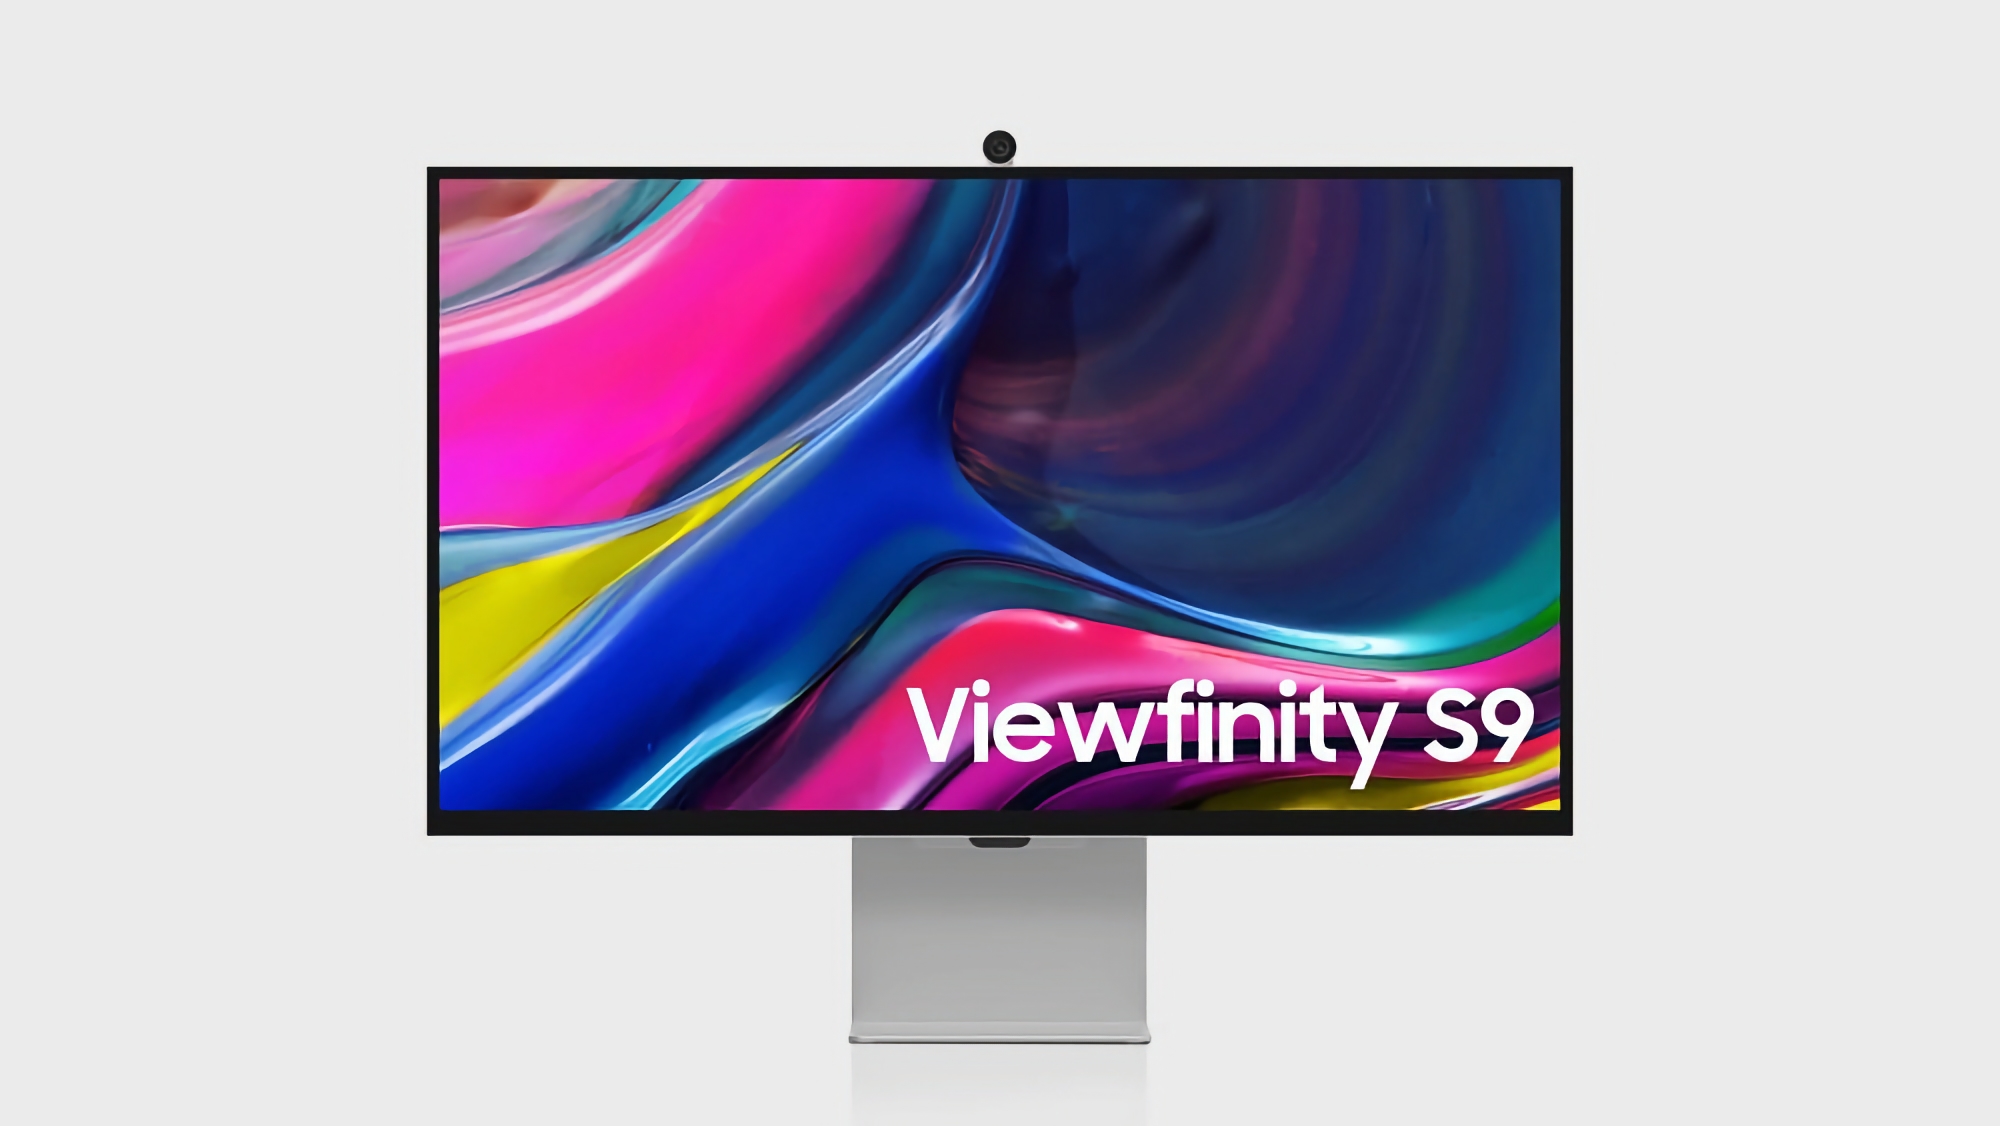 Il display da studio rivale di Apple: Samsung lancia il monitor ViewFinity S9 5K con webcam incorporata e sistema operativo Tizen TV OS